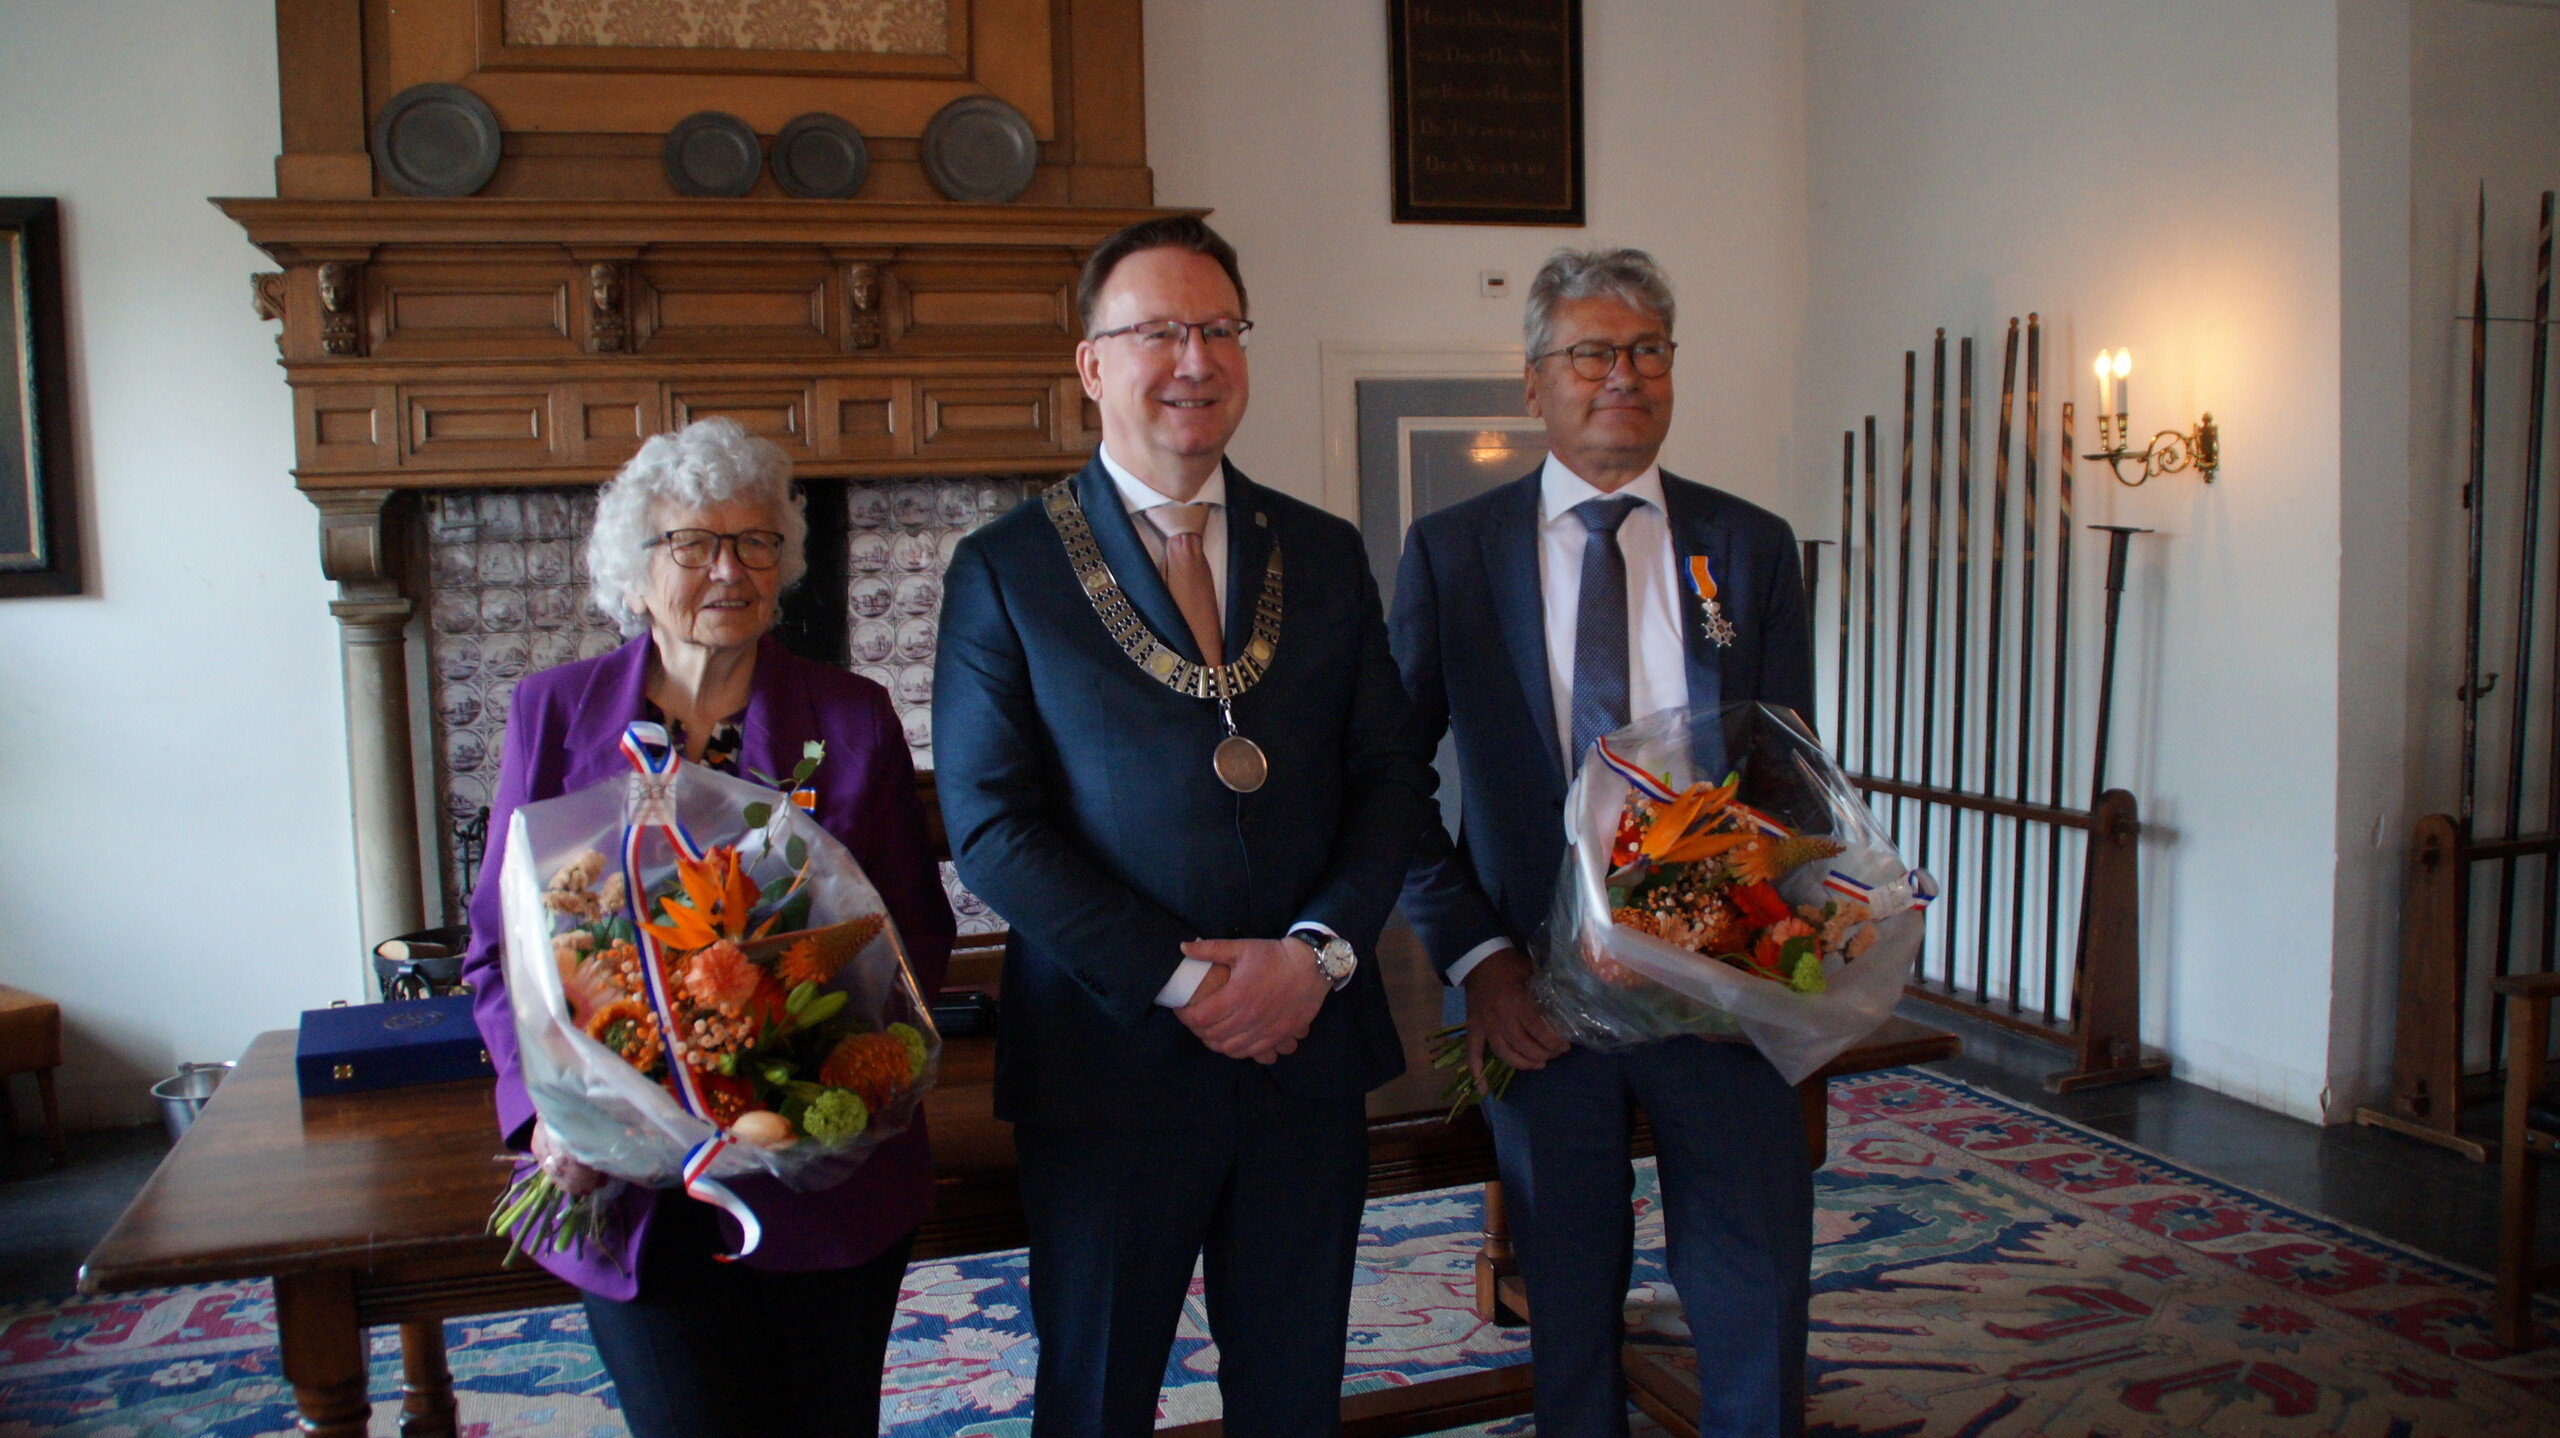 Burgemeester Van Domburg met de ontvangers van de lintjes